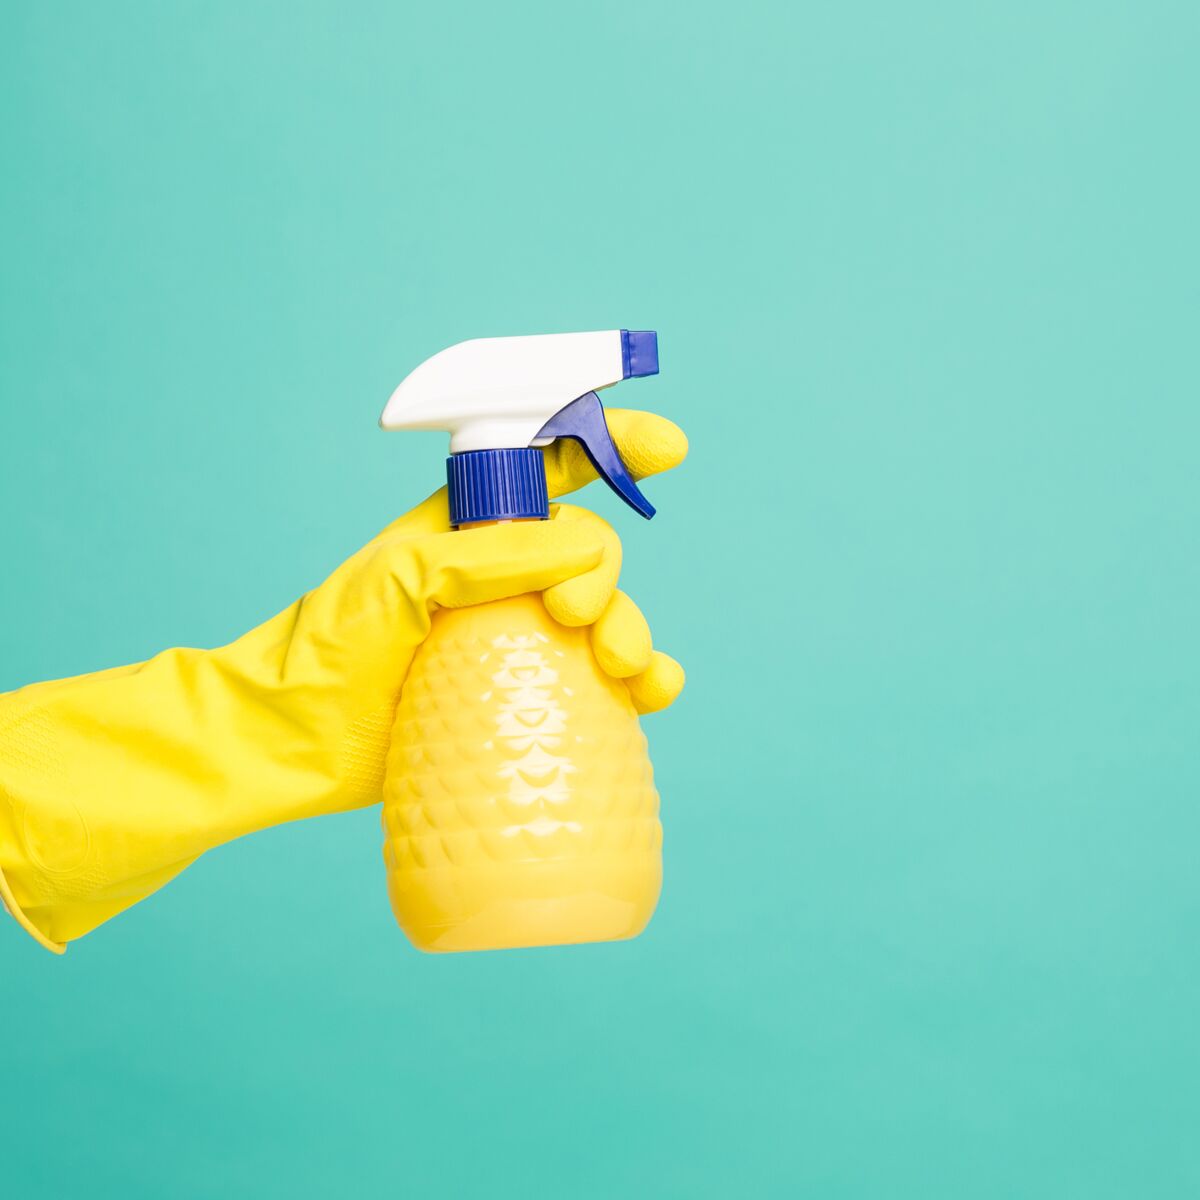 Produit de nettoyage : la recette du désinfectant naturel, anti